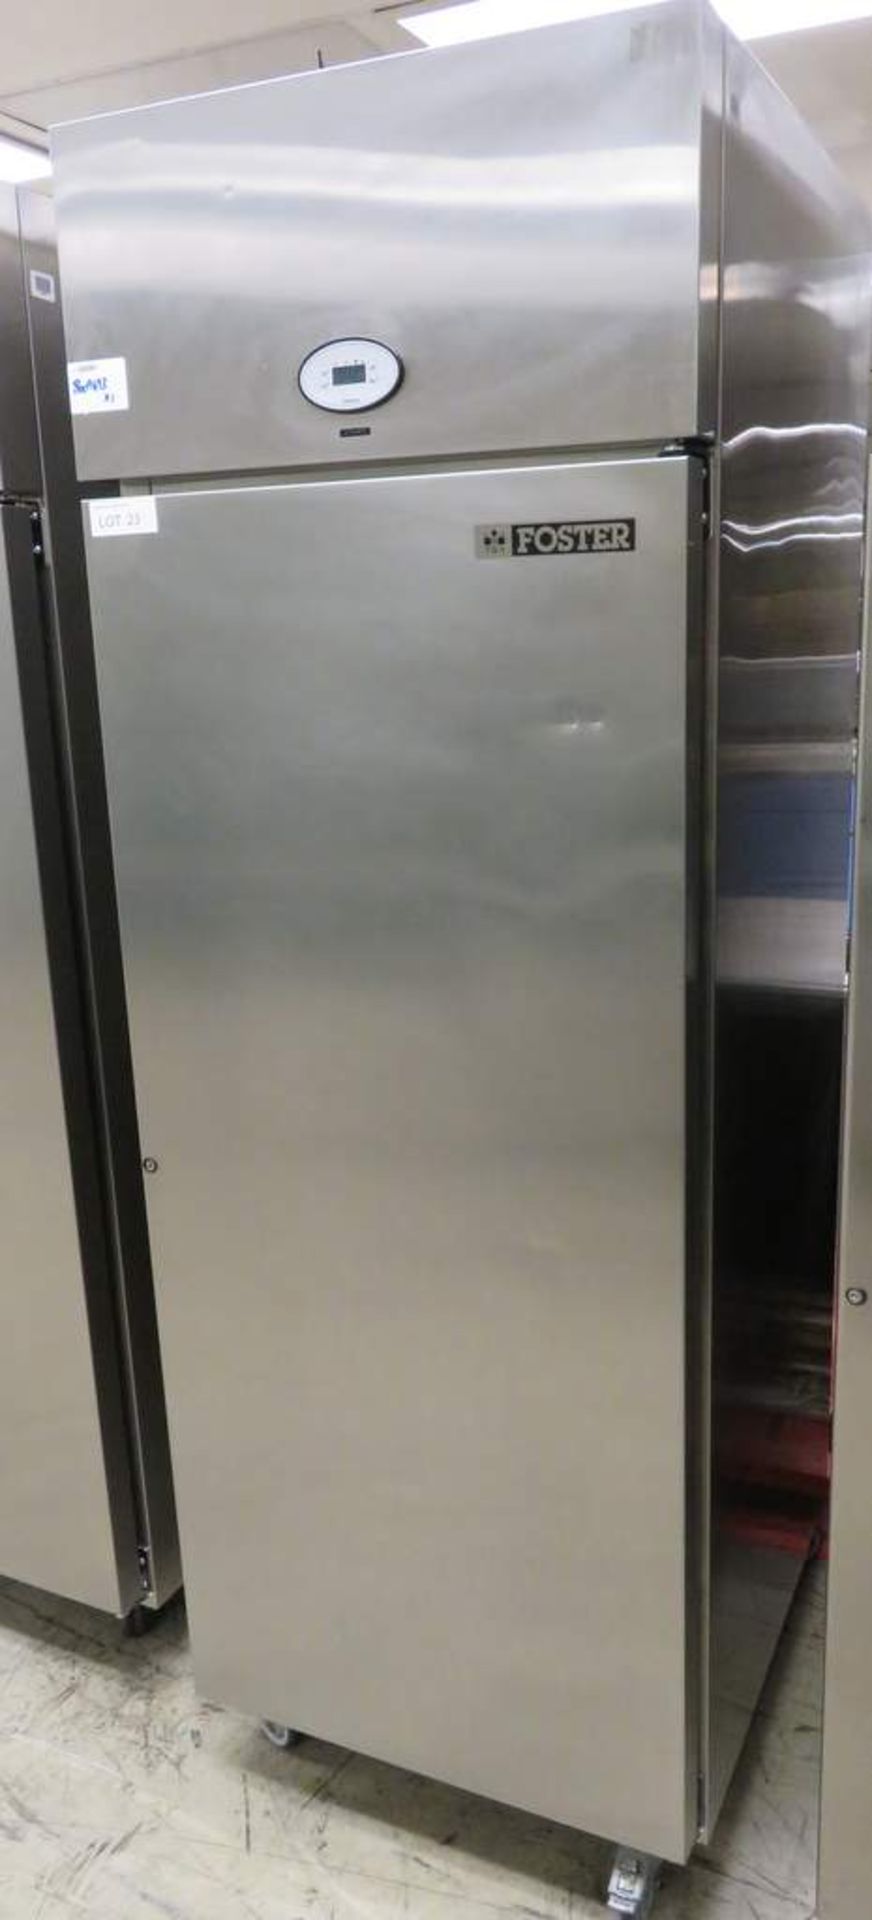 Foster PSG600H stainless steel fridge - E5068404 - Image 2 of 7